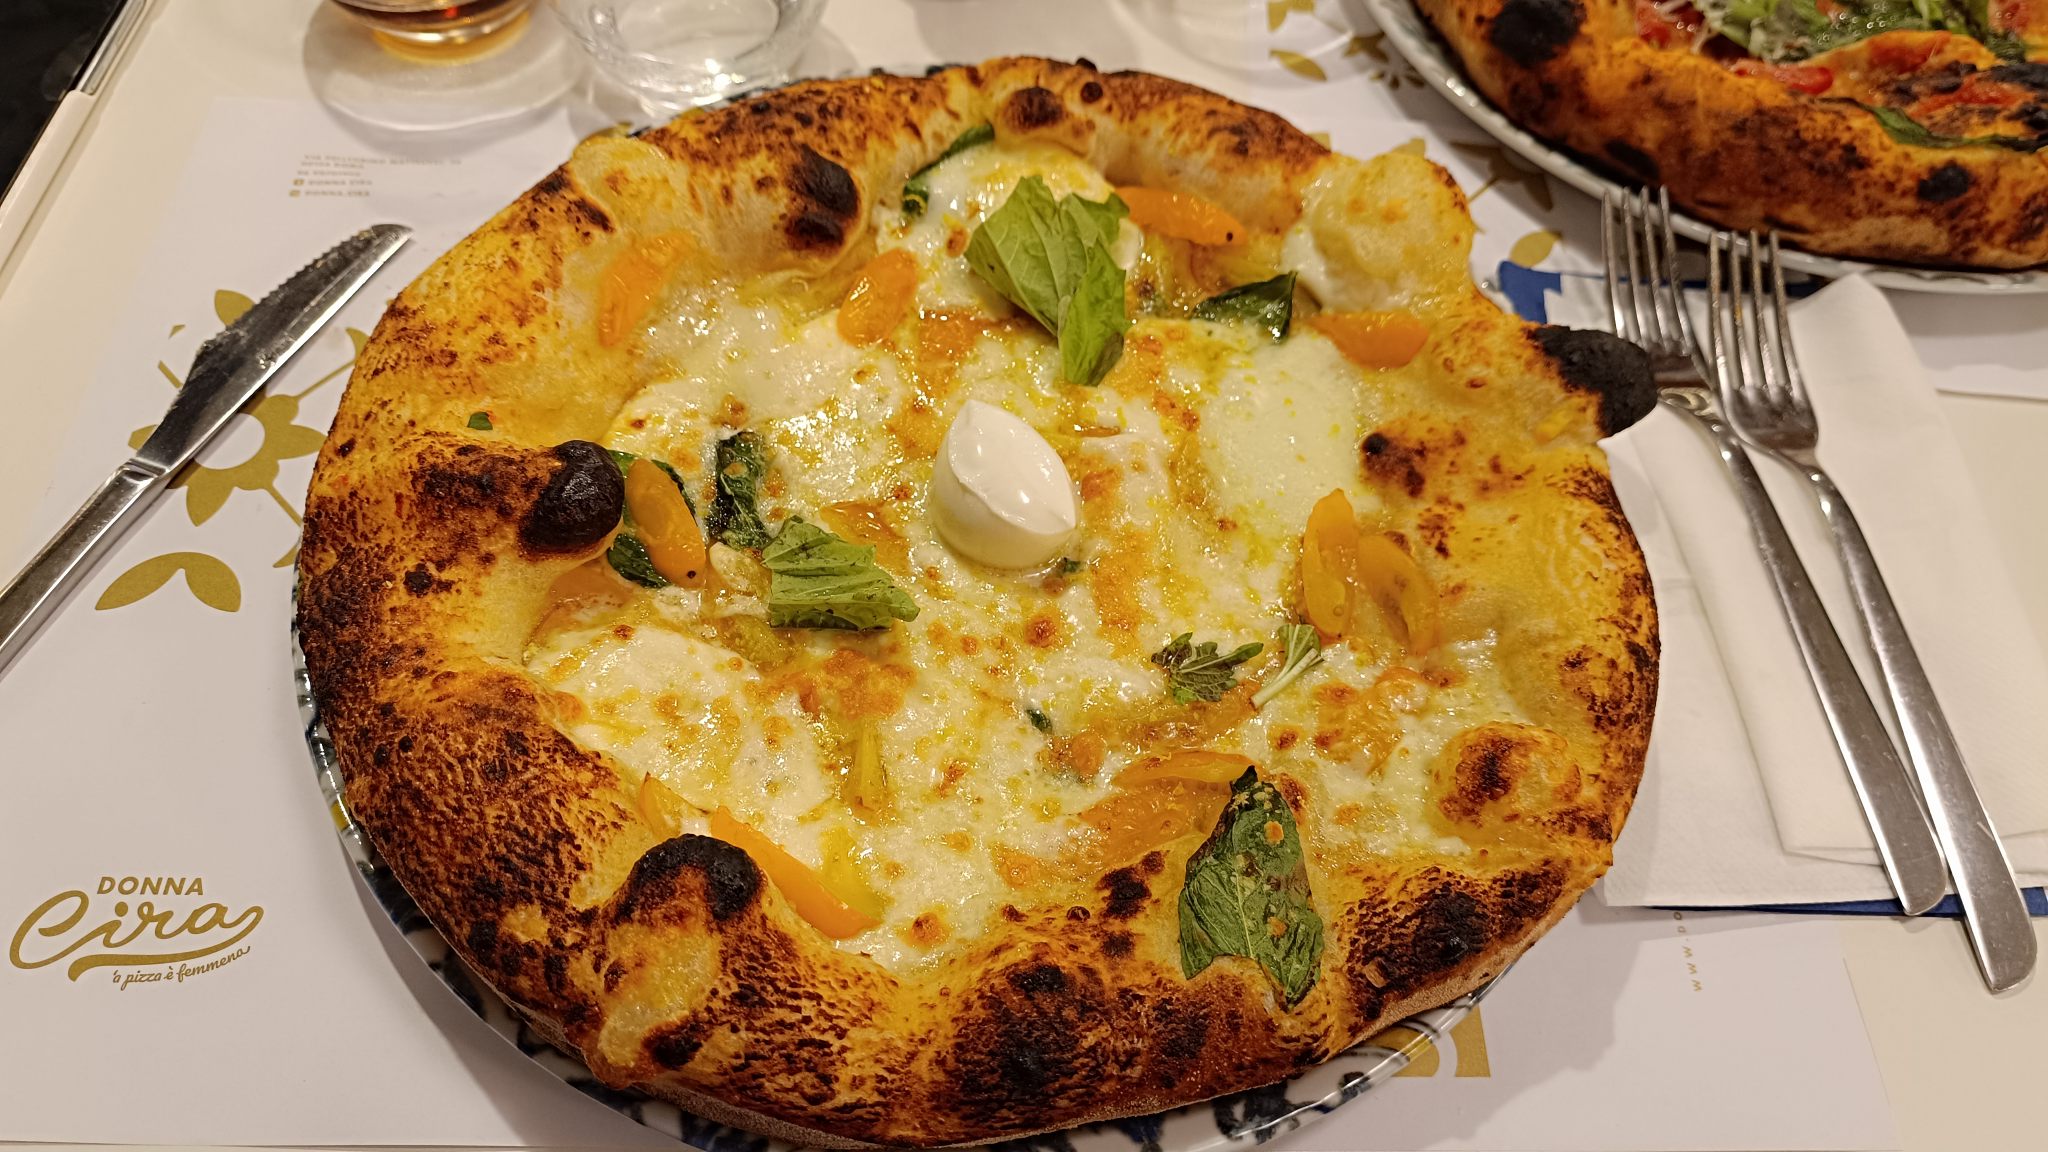 Donna Cira - Pizza